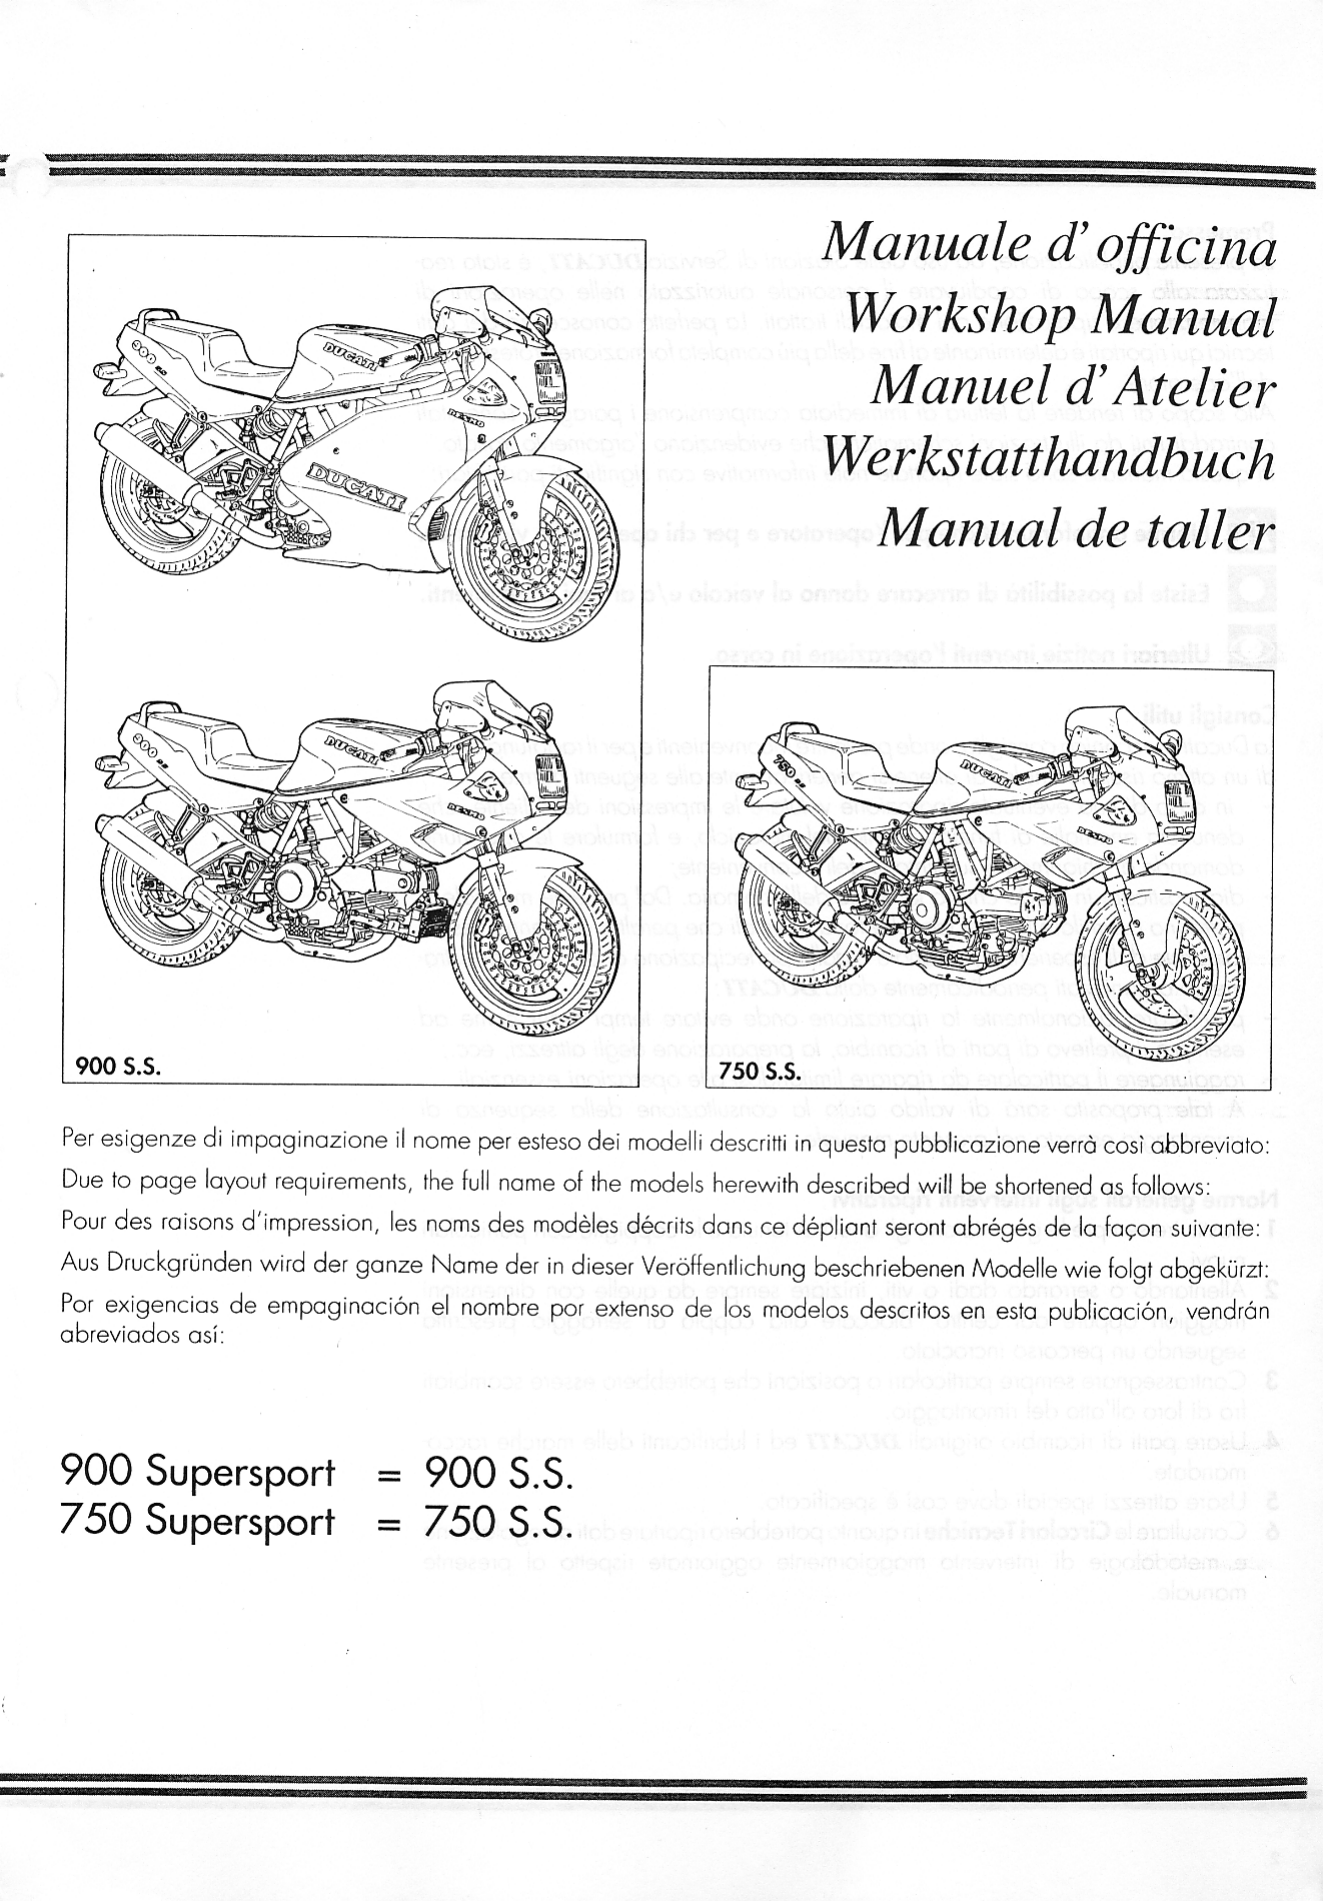 1991-1998 Ducati 750 repair and shop manual Preview image 1